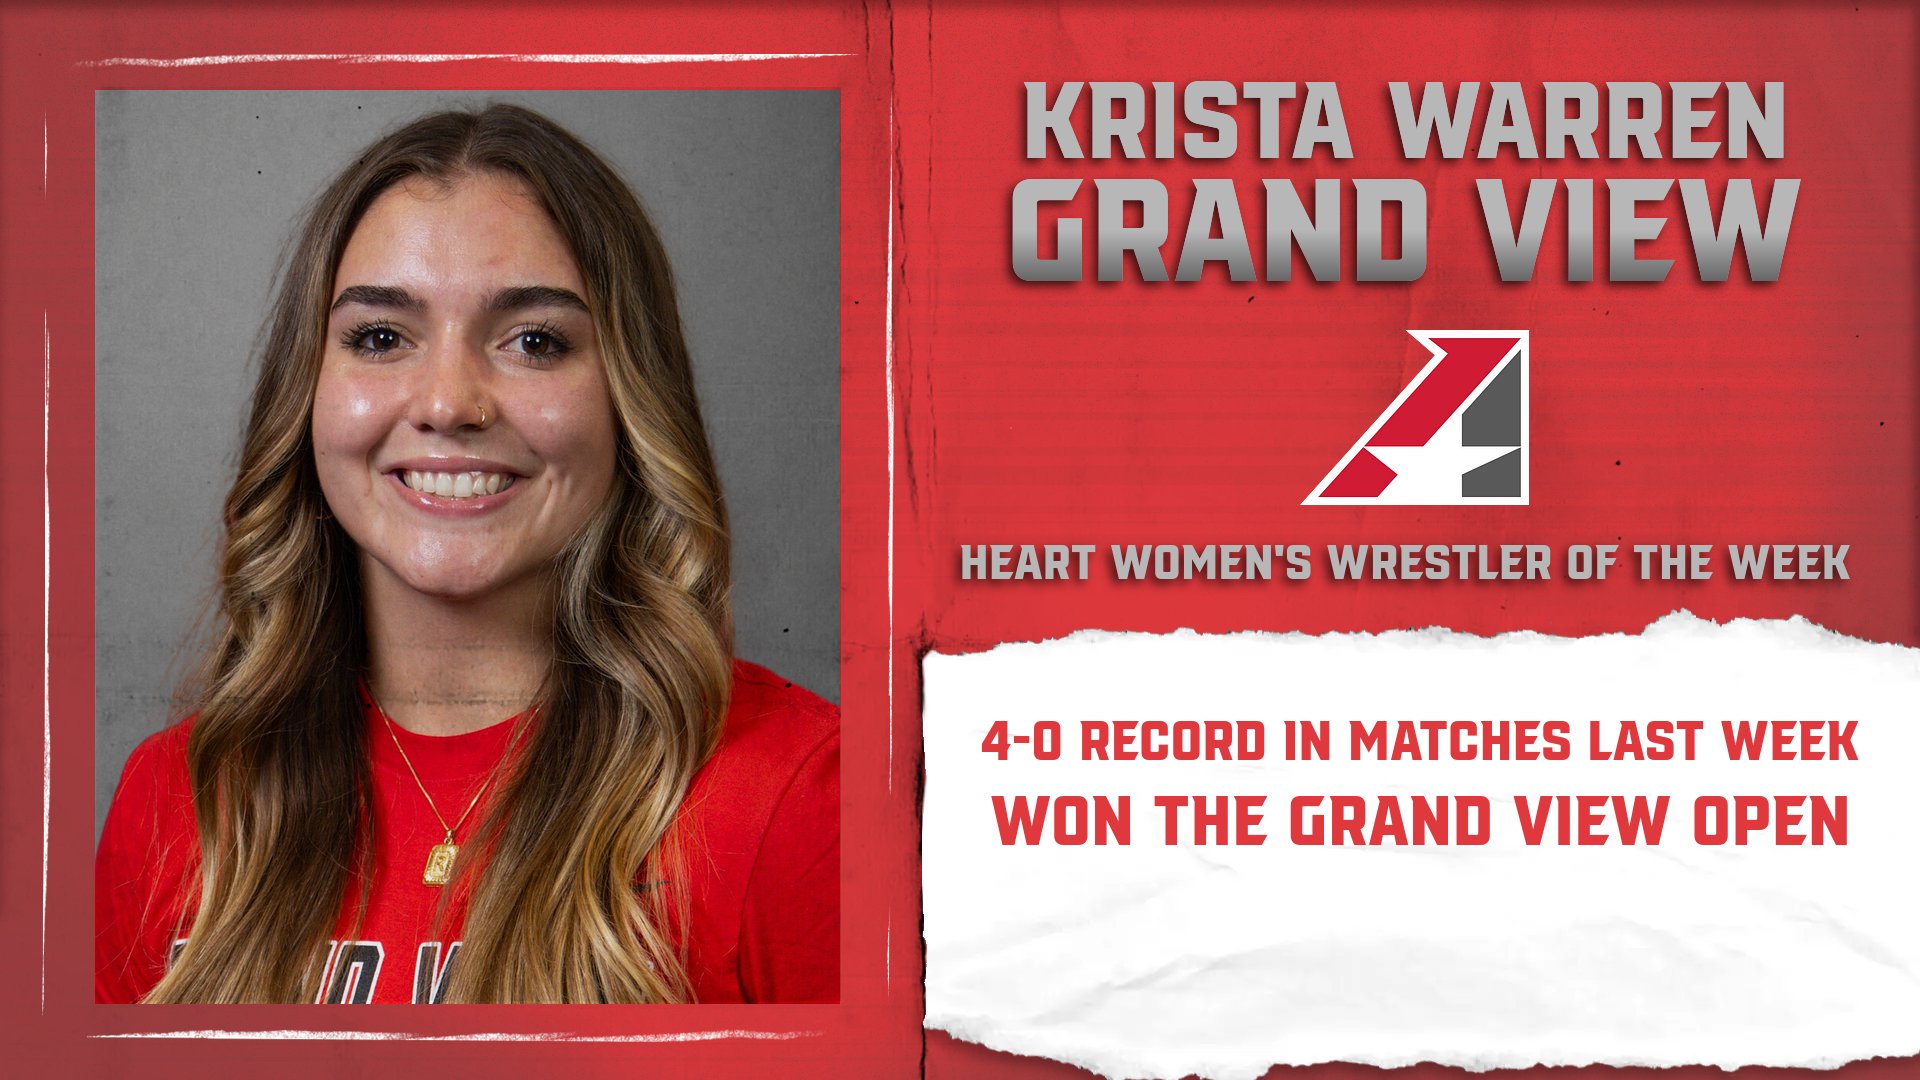 Krista Warren Captures Heart Women’s Wrestler of the Week